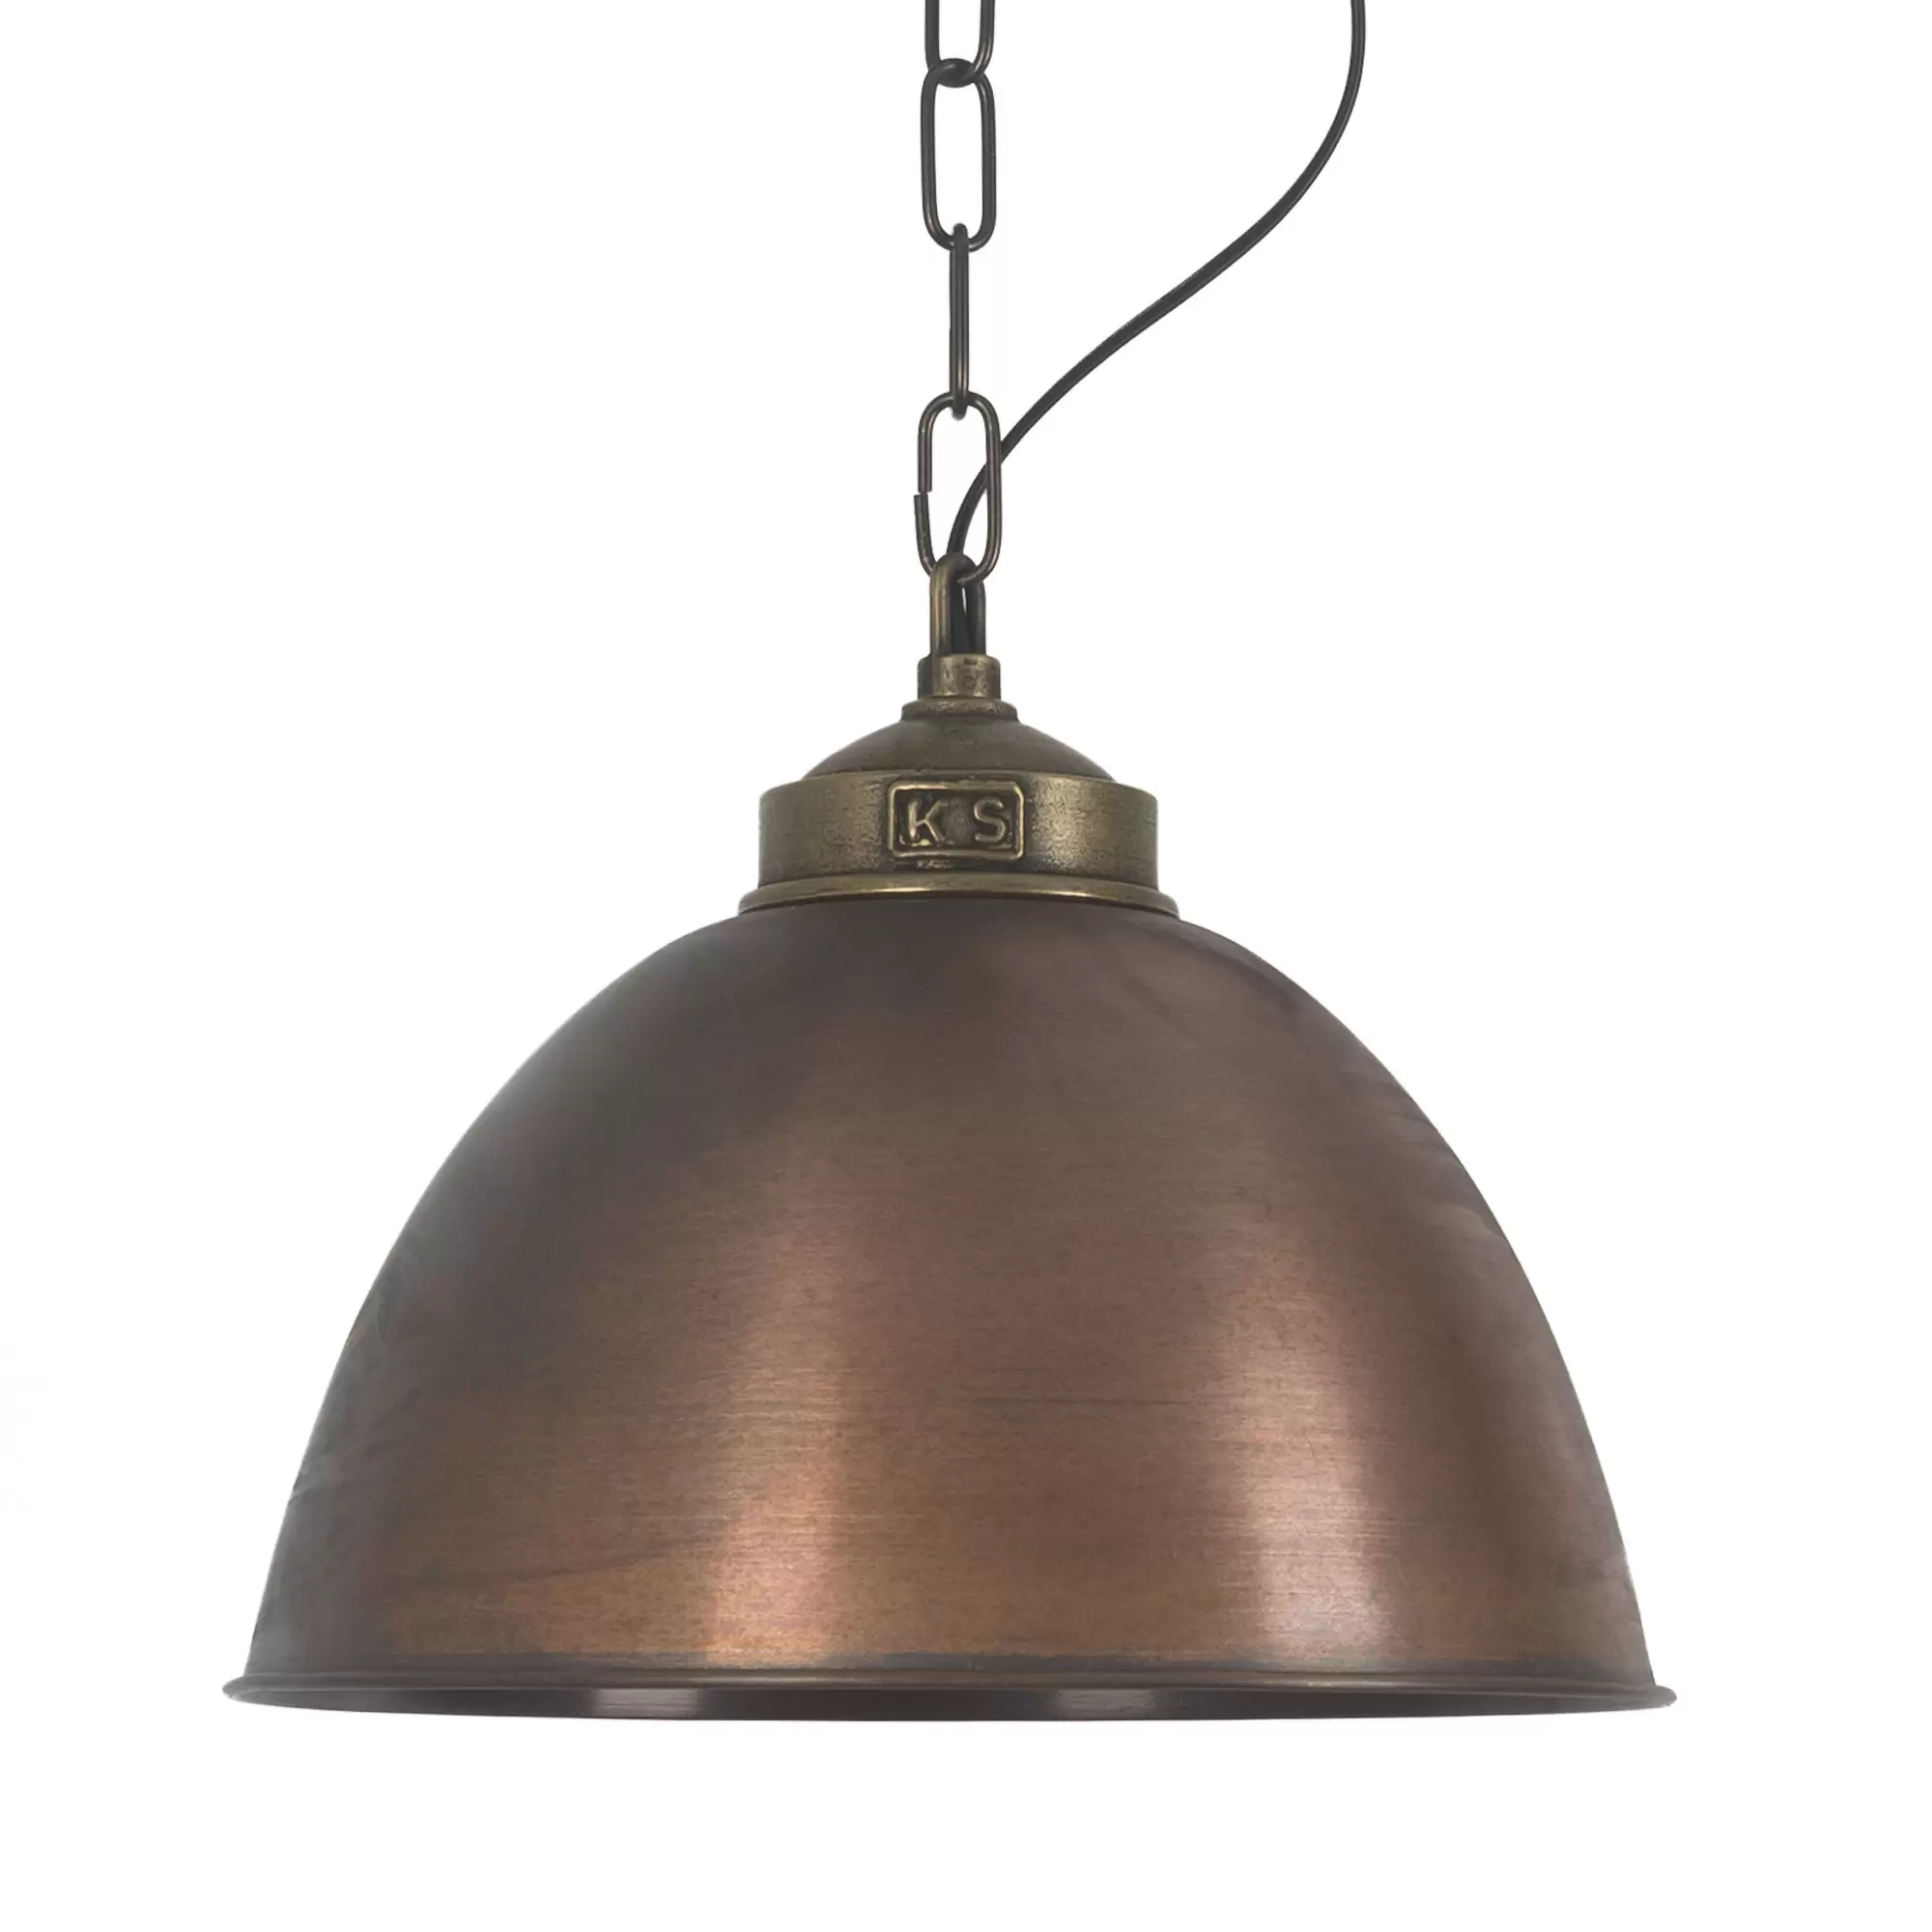 bladerdeeg Haast je beroerte Hanglamp industrieel brons & koper Loft ll | Nostalux.nl